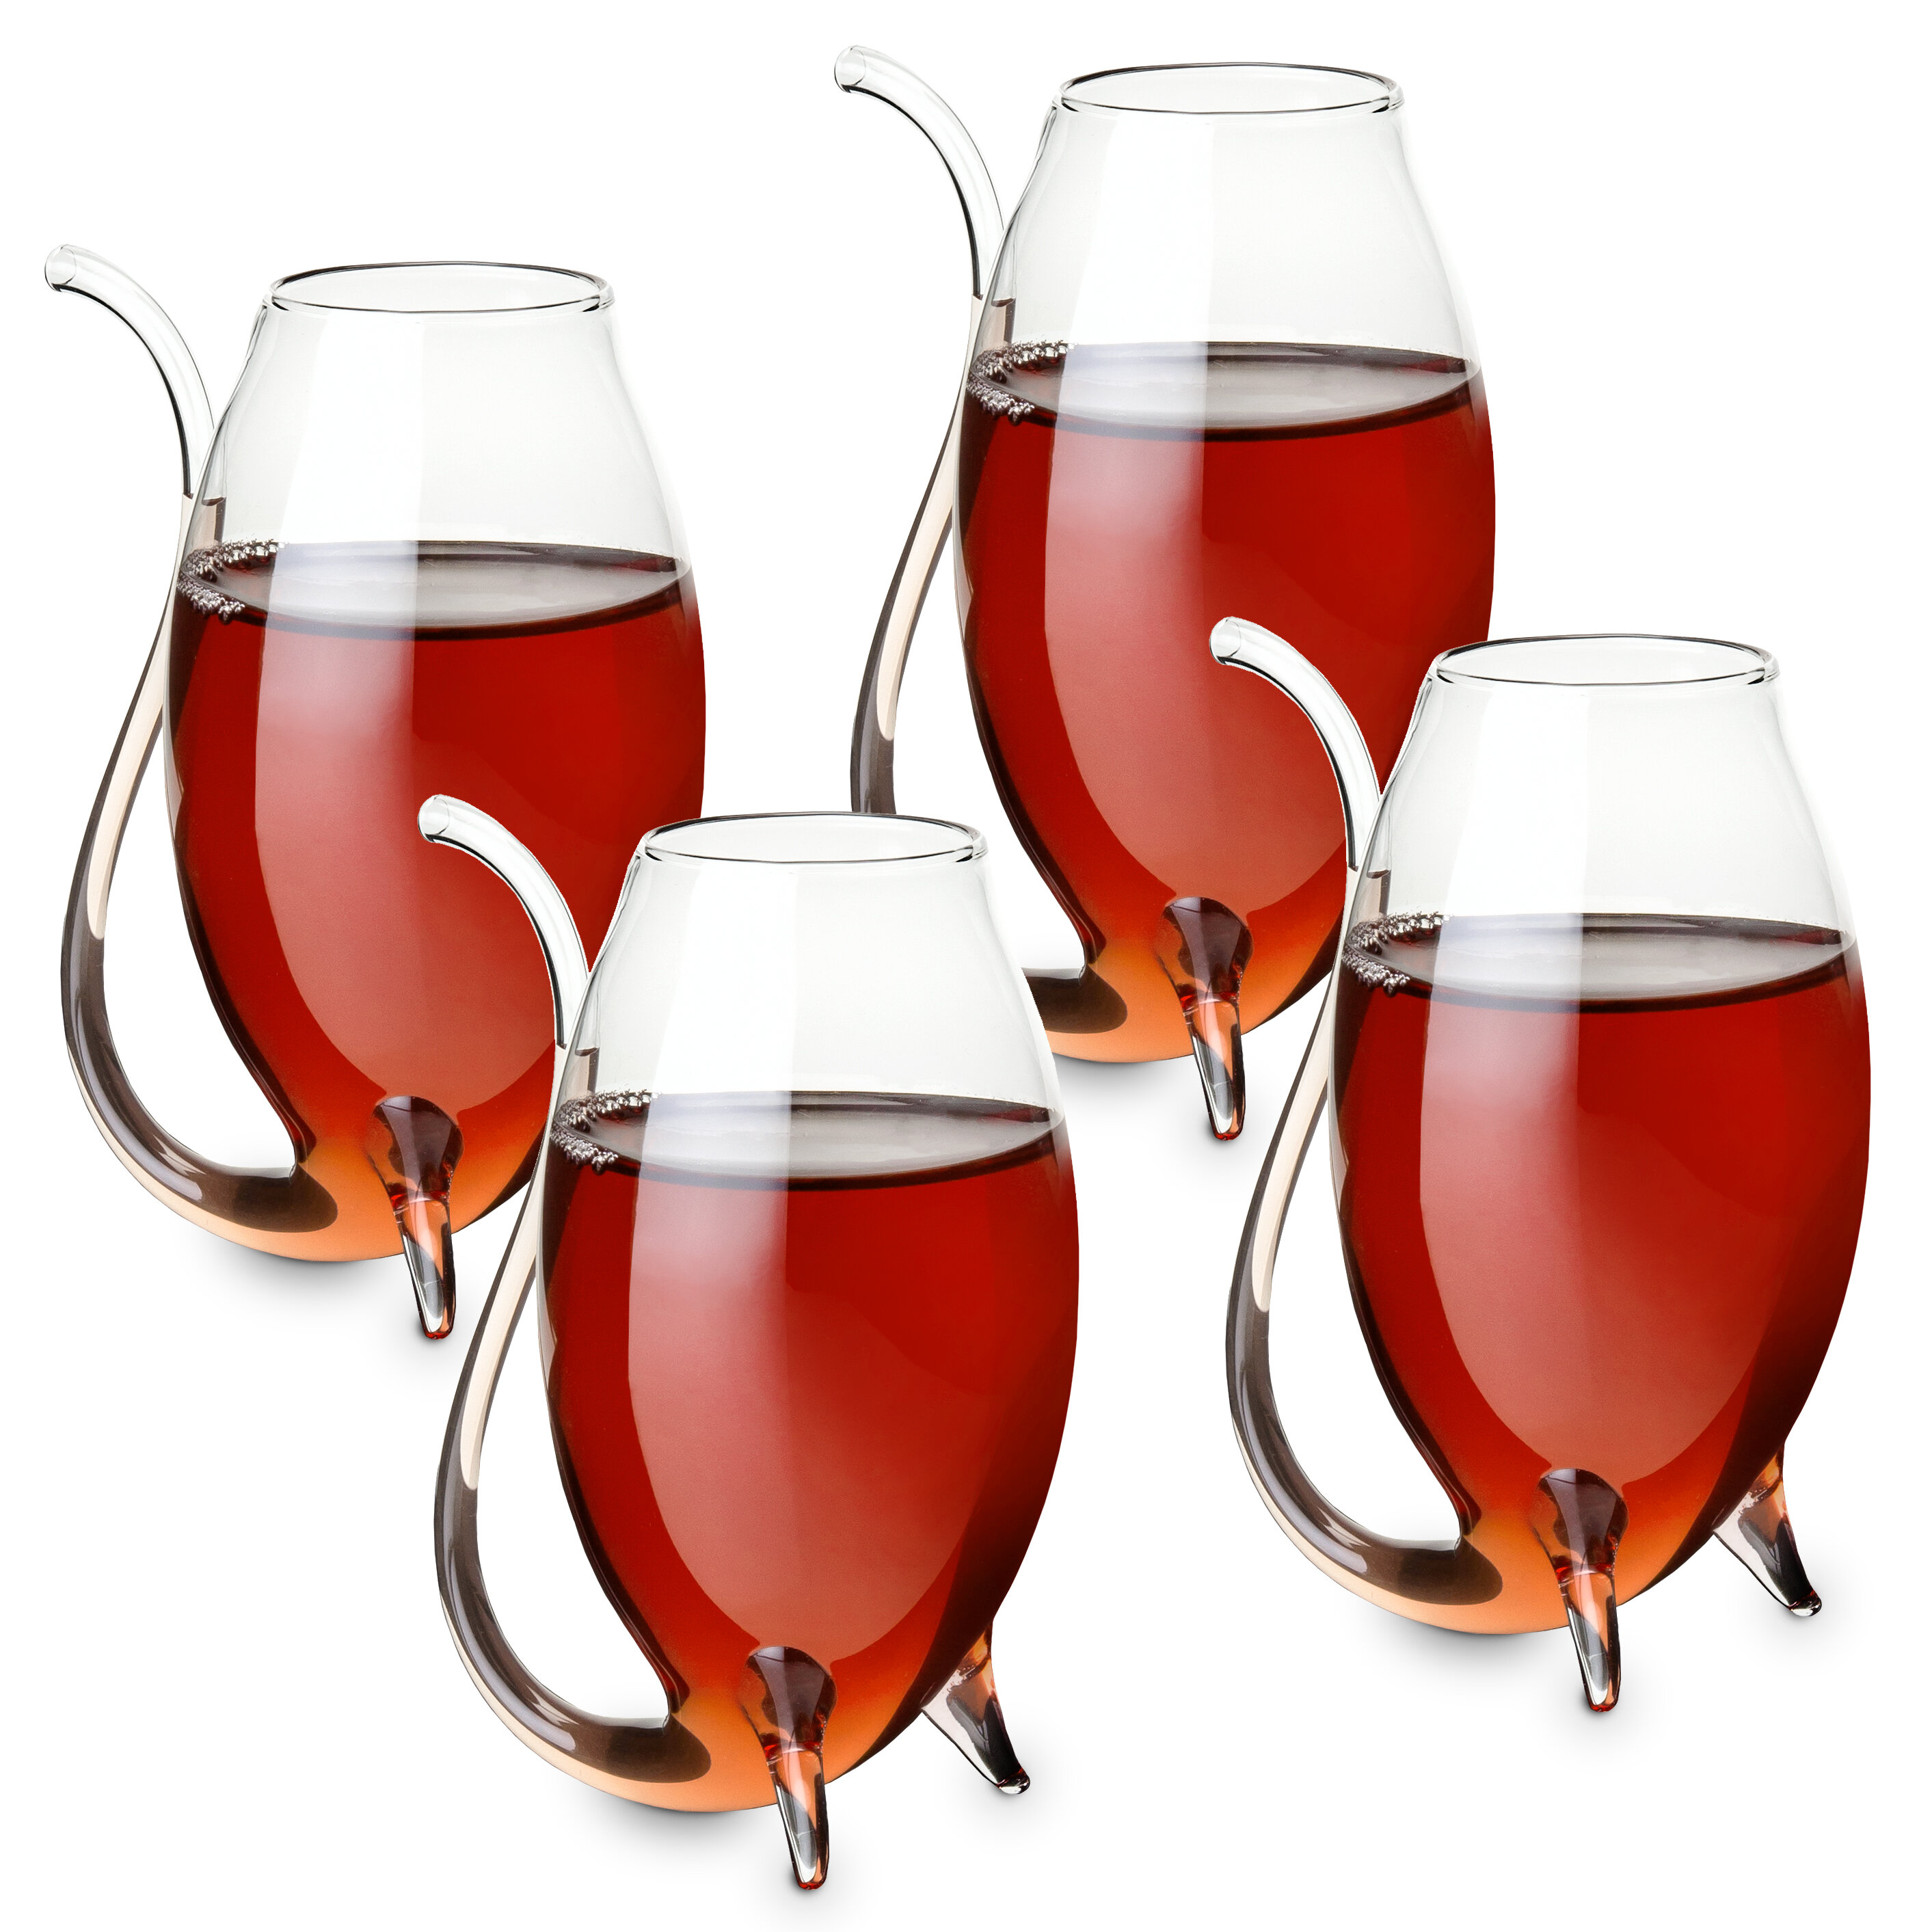 https://assets.wfcdn.com/im/42537212/compr-r85/1910/191029189/true-douro-4-piece-3oz-glass-all-purpose-wine-glass-glassware-set.jpg